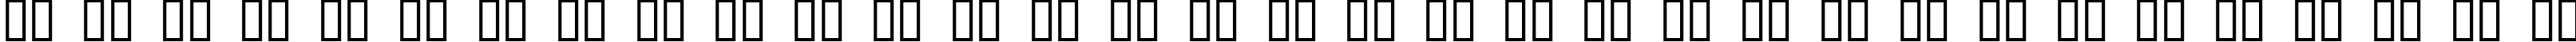 Пример написания русского алфавита шрифтом Dael Calligraphy